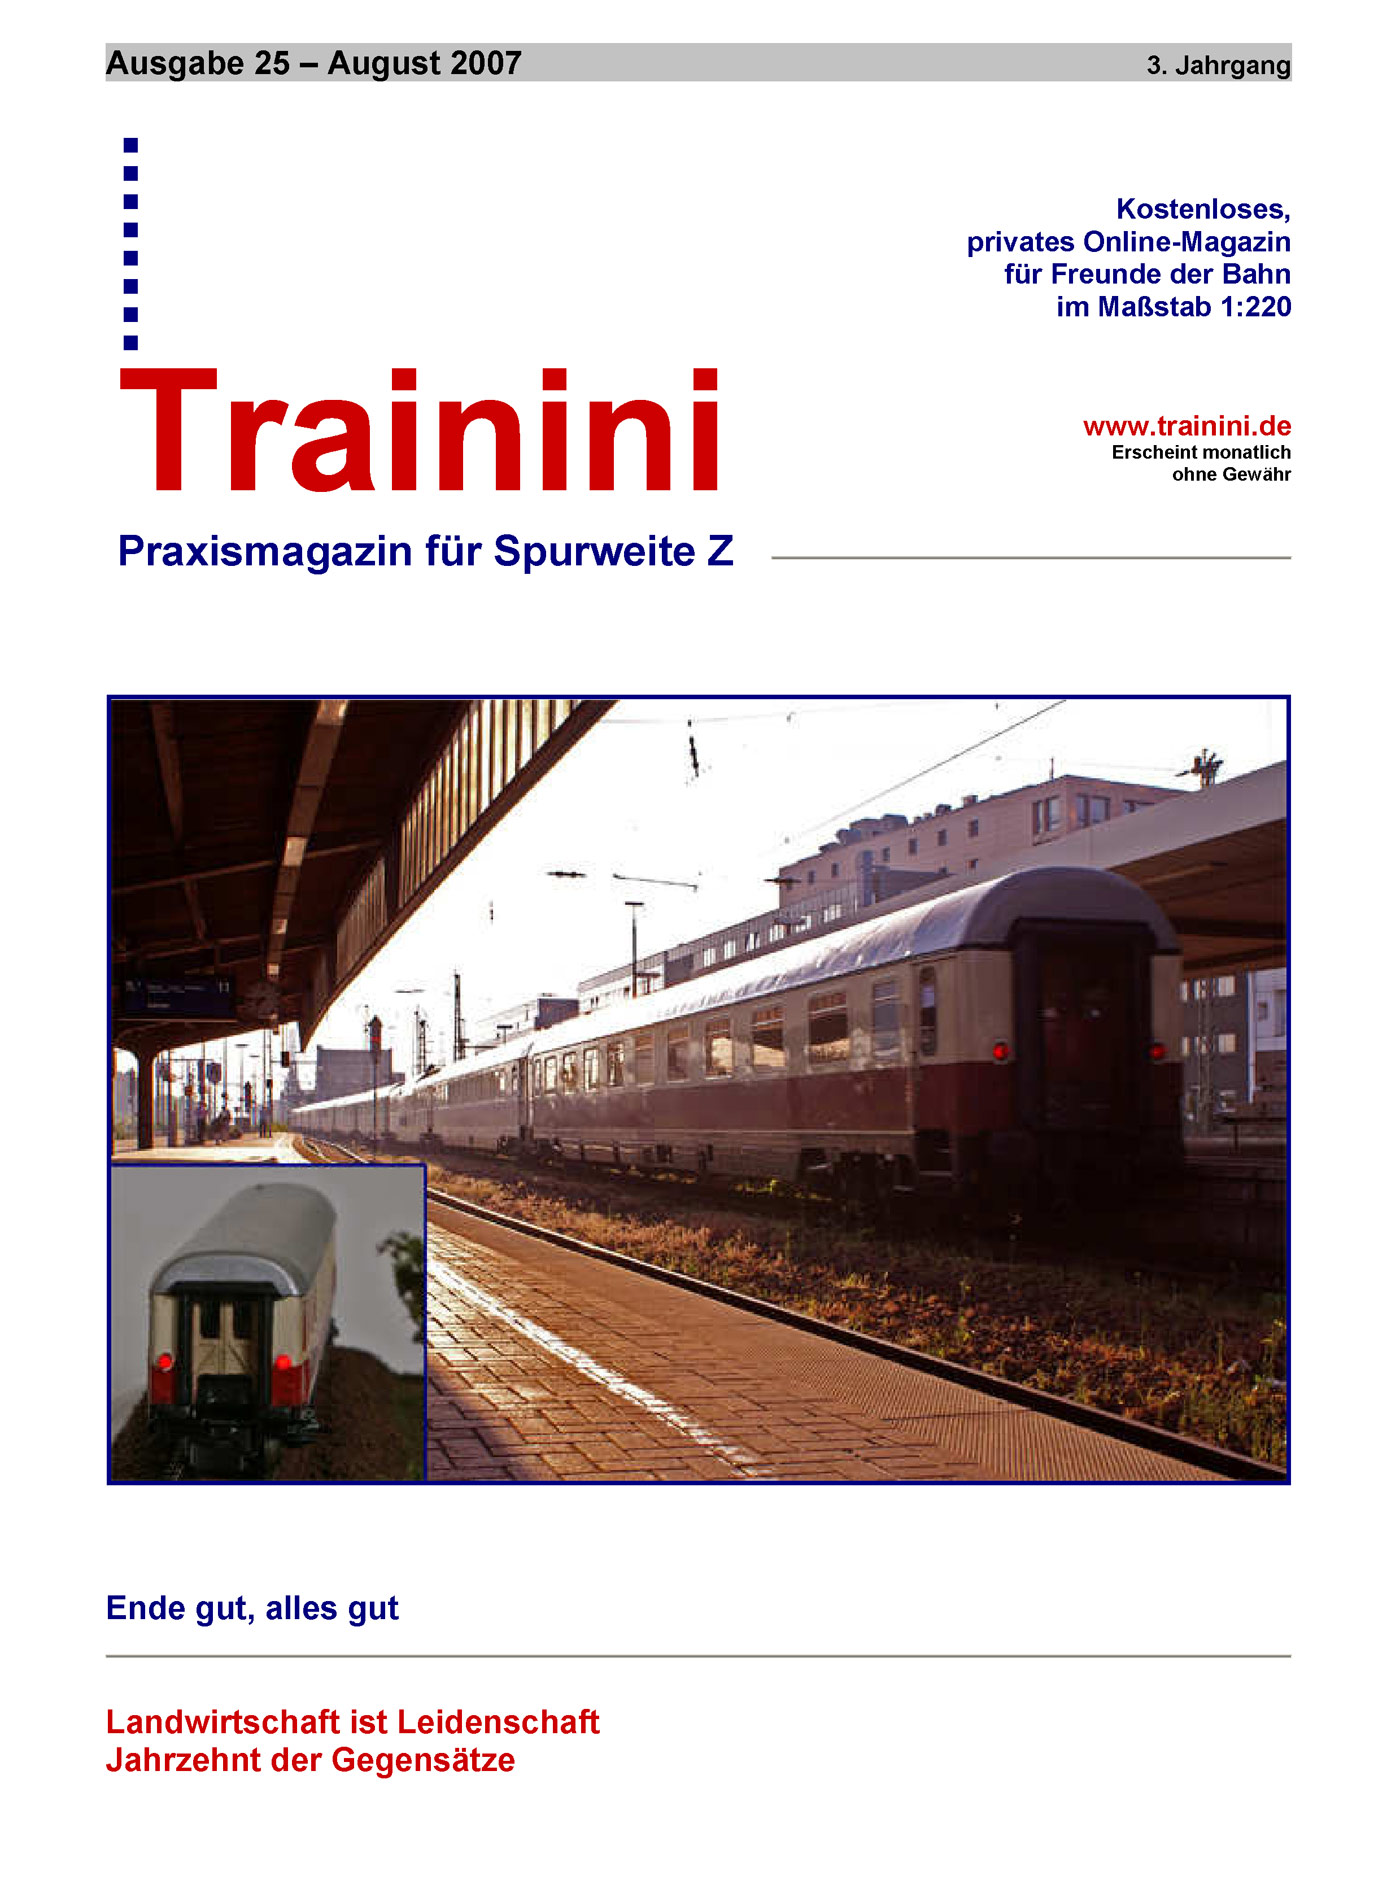 Trainini Ausgabe August 2007